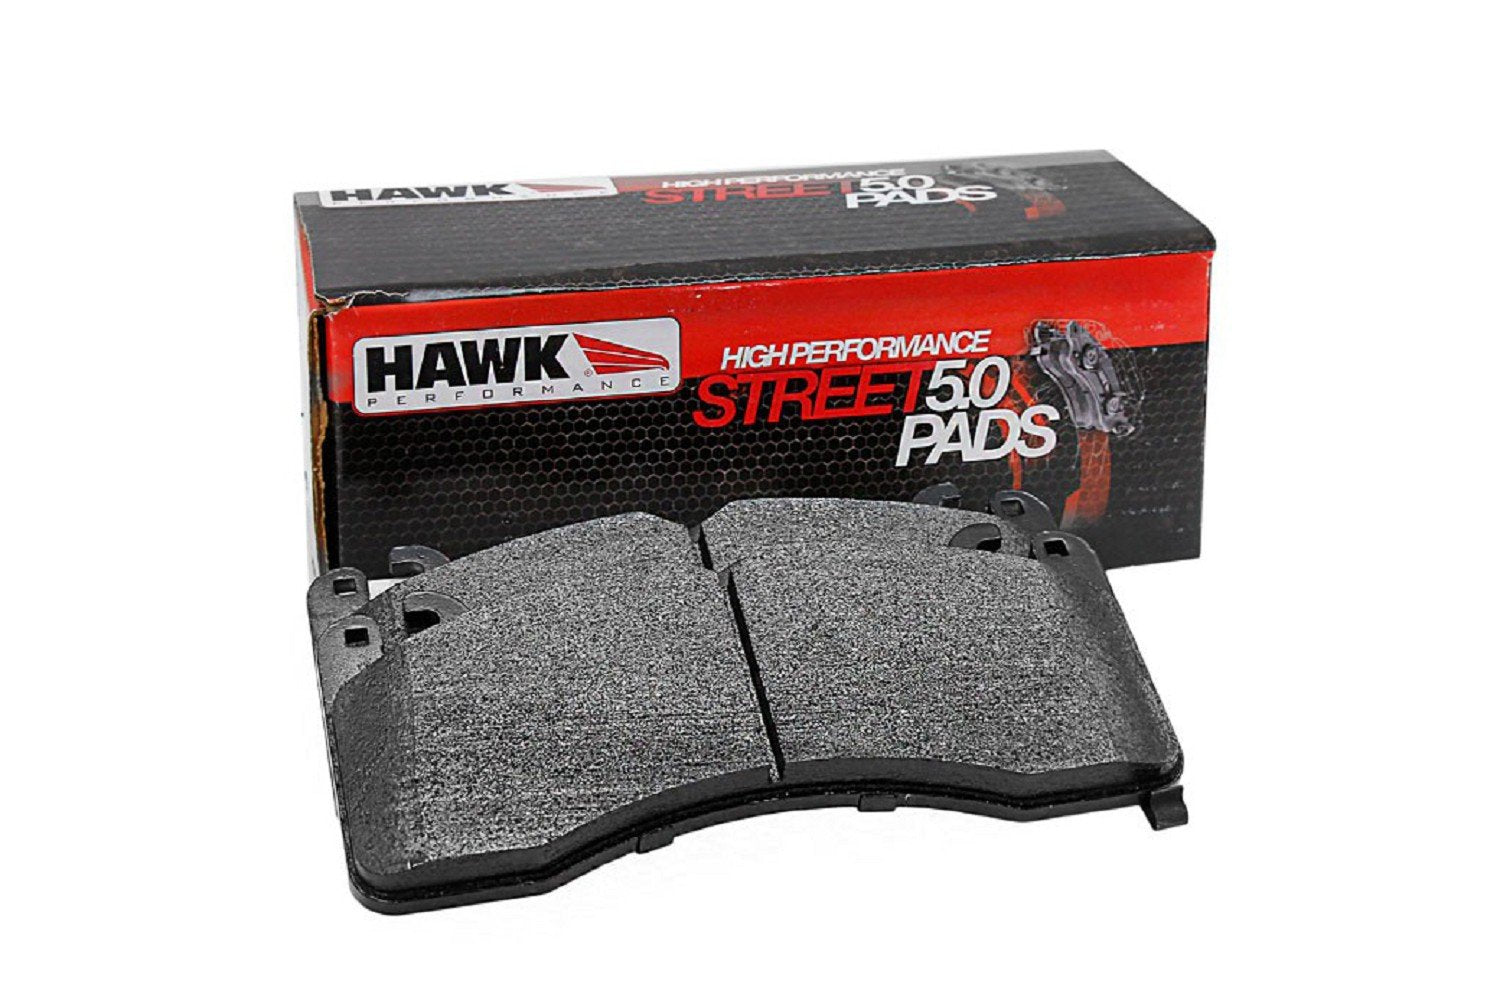 Hawk HPS 5.0 S550 EcoBoost Mustang nagy teljesítményű fékbetétek